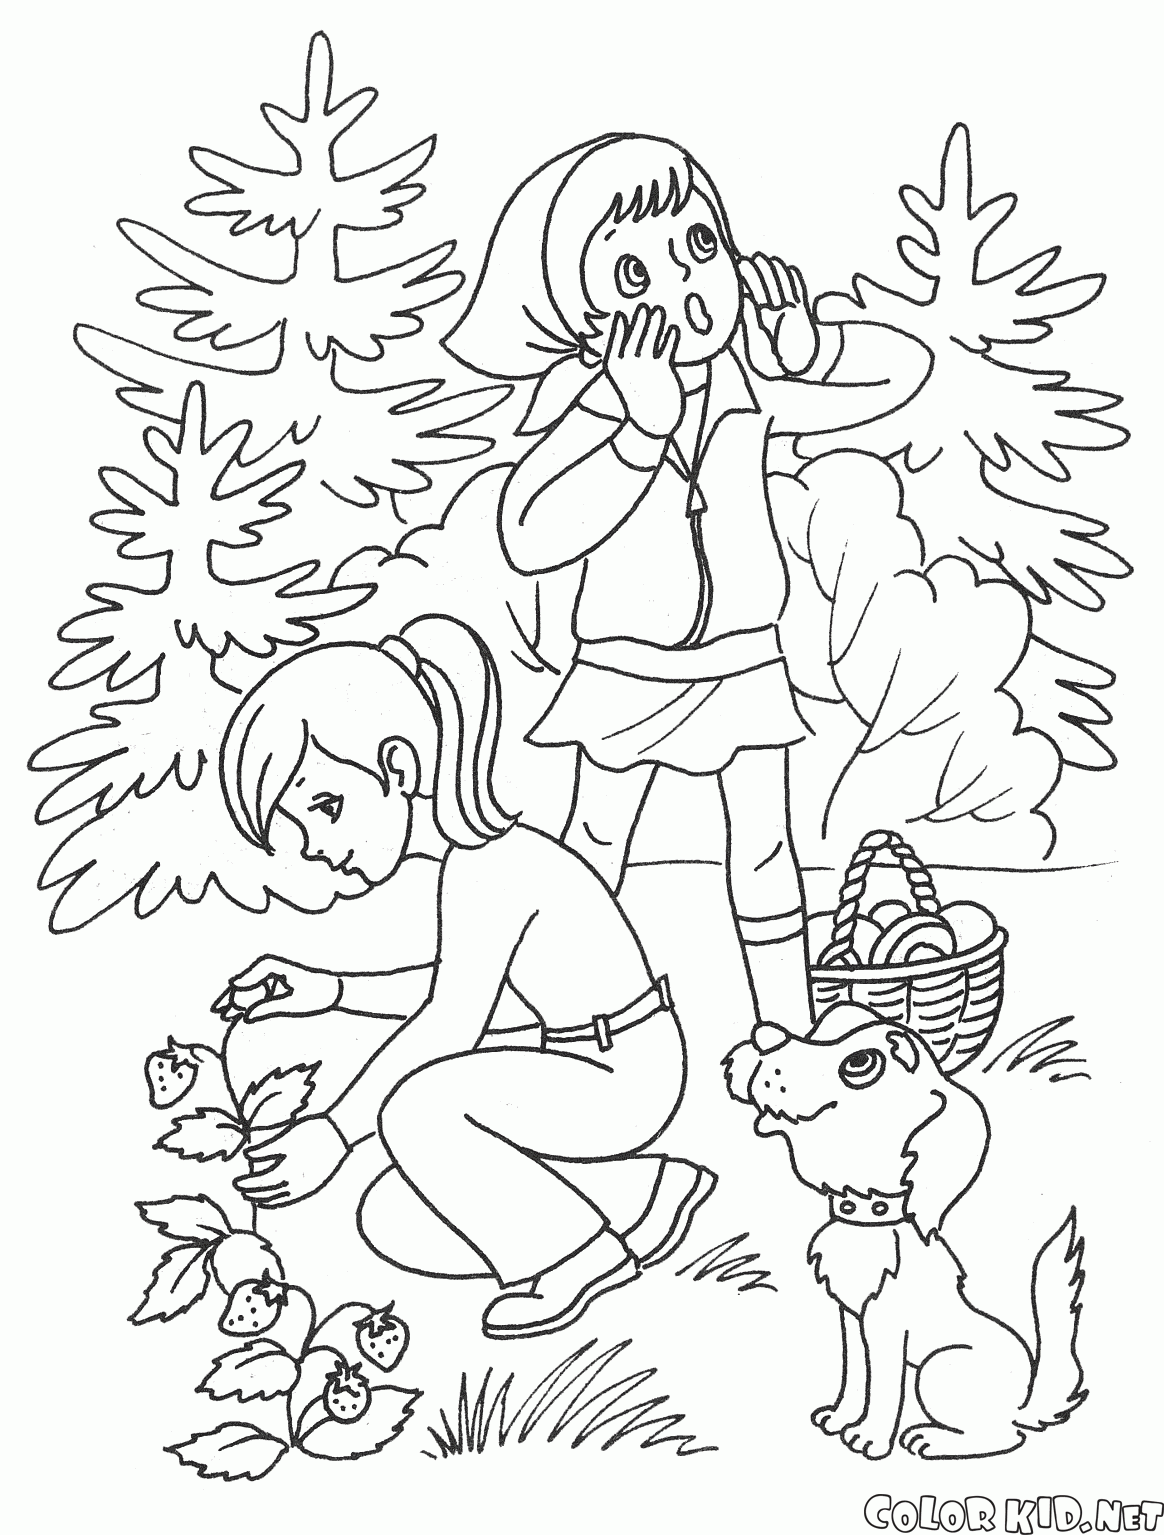 Ormanda yaz aylarında çocuklar